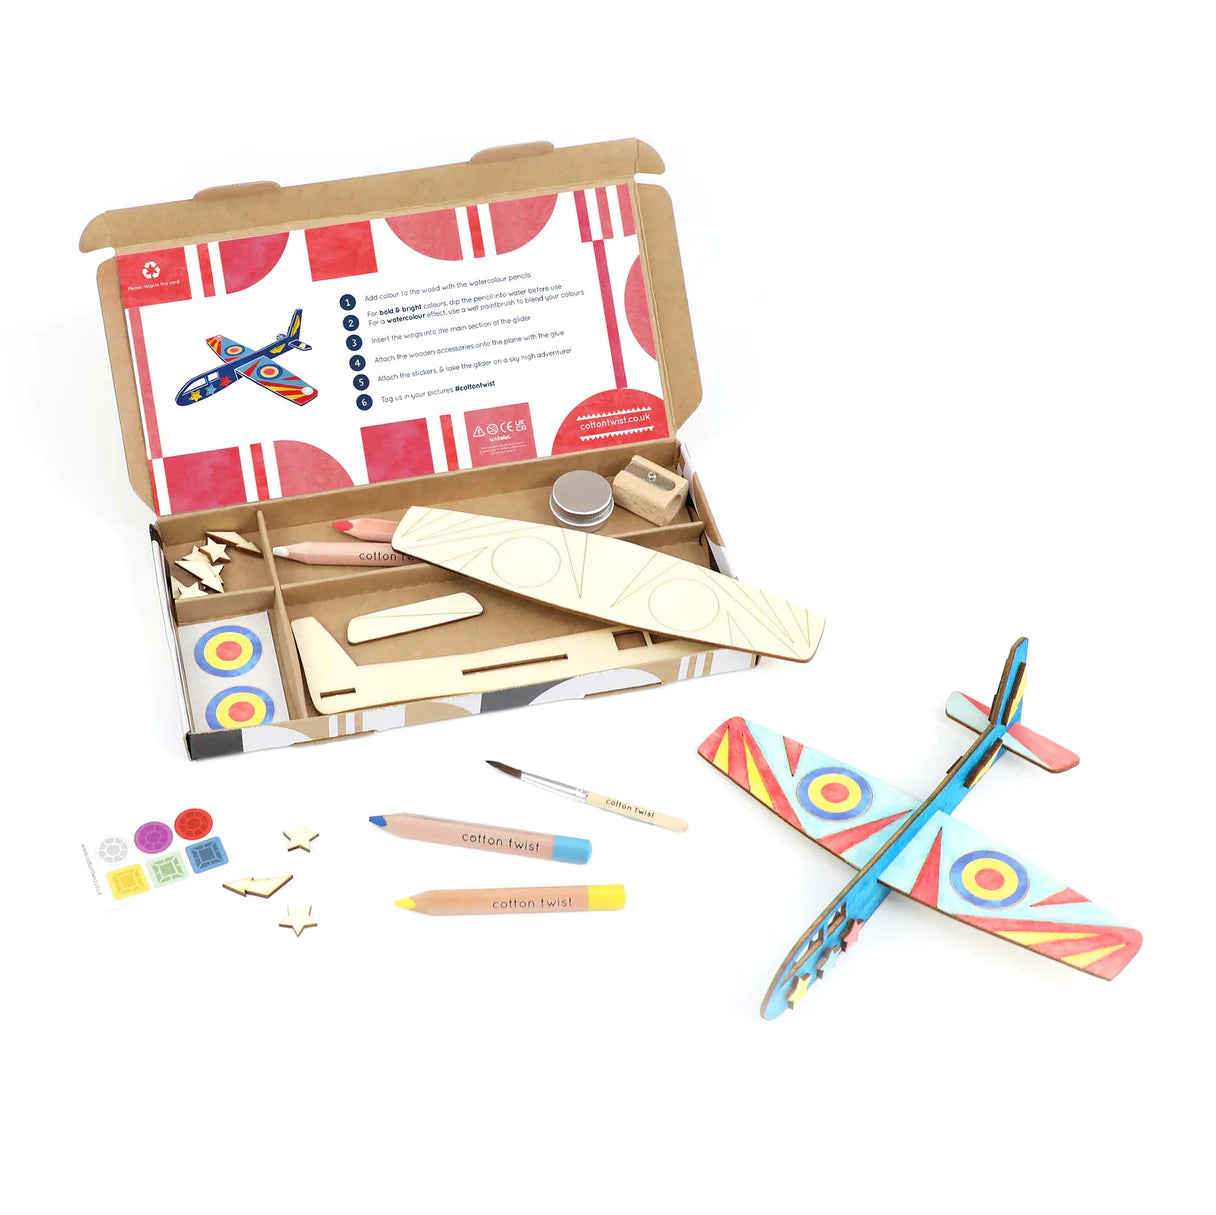 Cotton Twist Craft Kit Activity Box - Glider - Little Reef and Friends